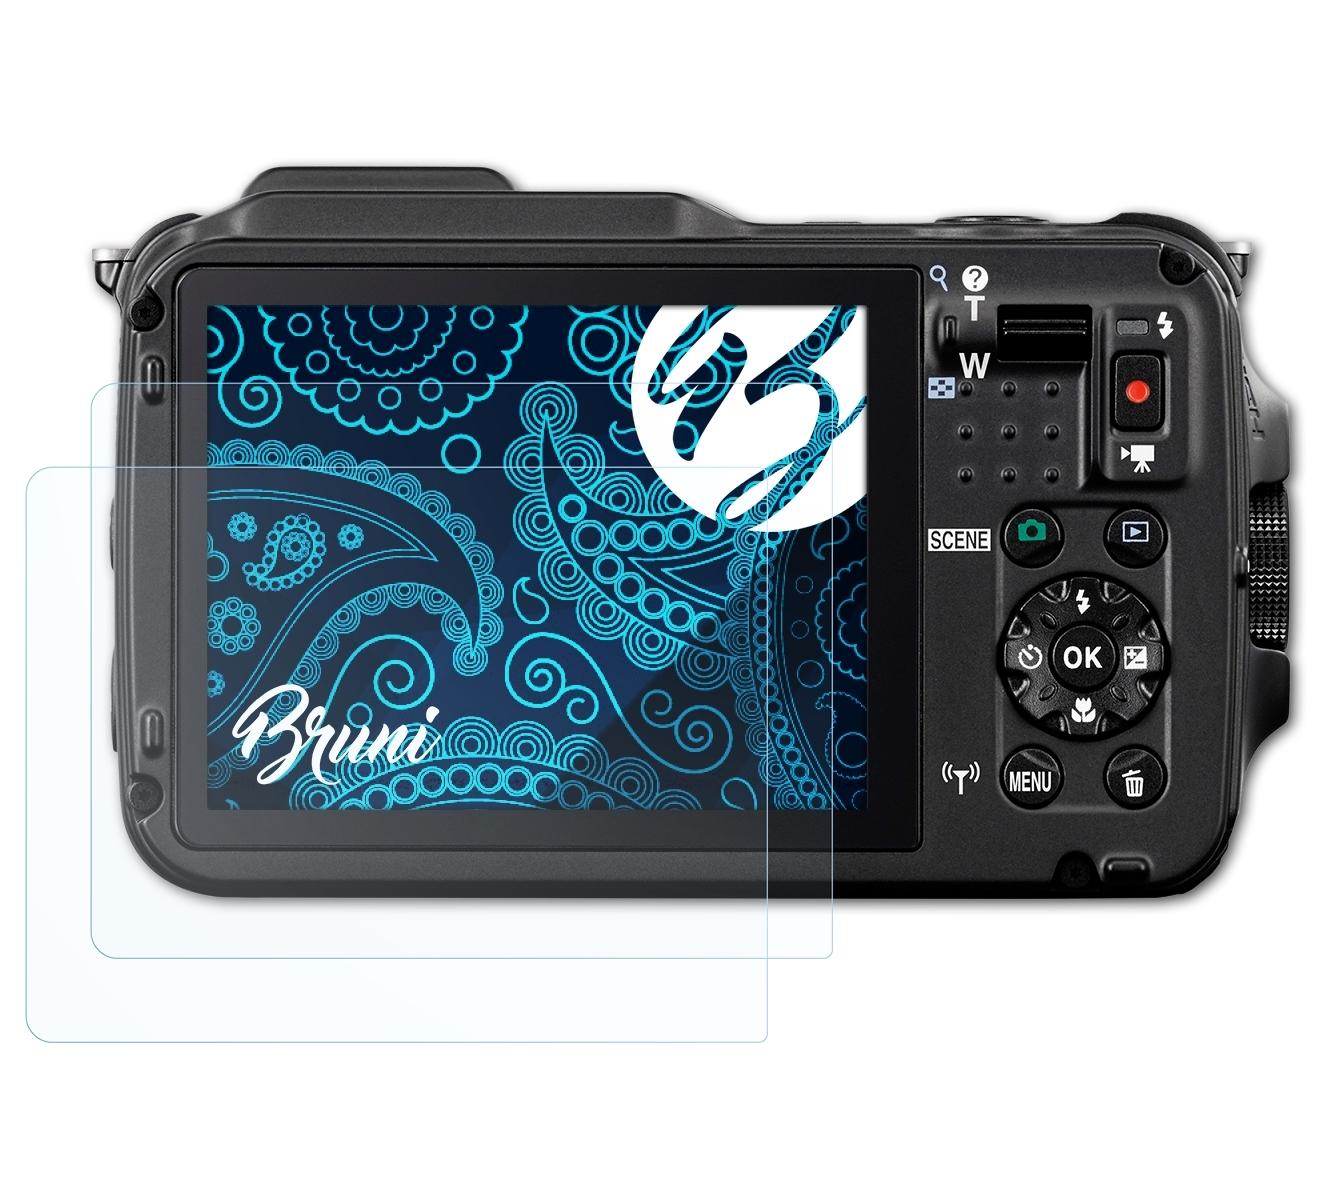 BRUNI 2x Basics-Clear Schutzfolie(für AW120) Coolpix Nikon